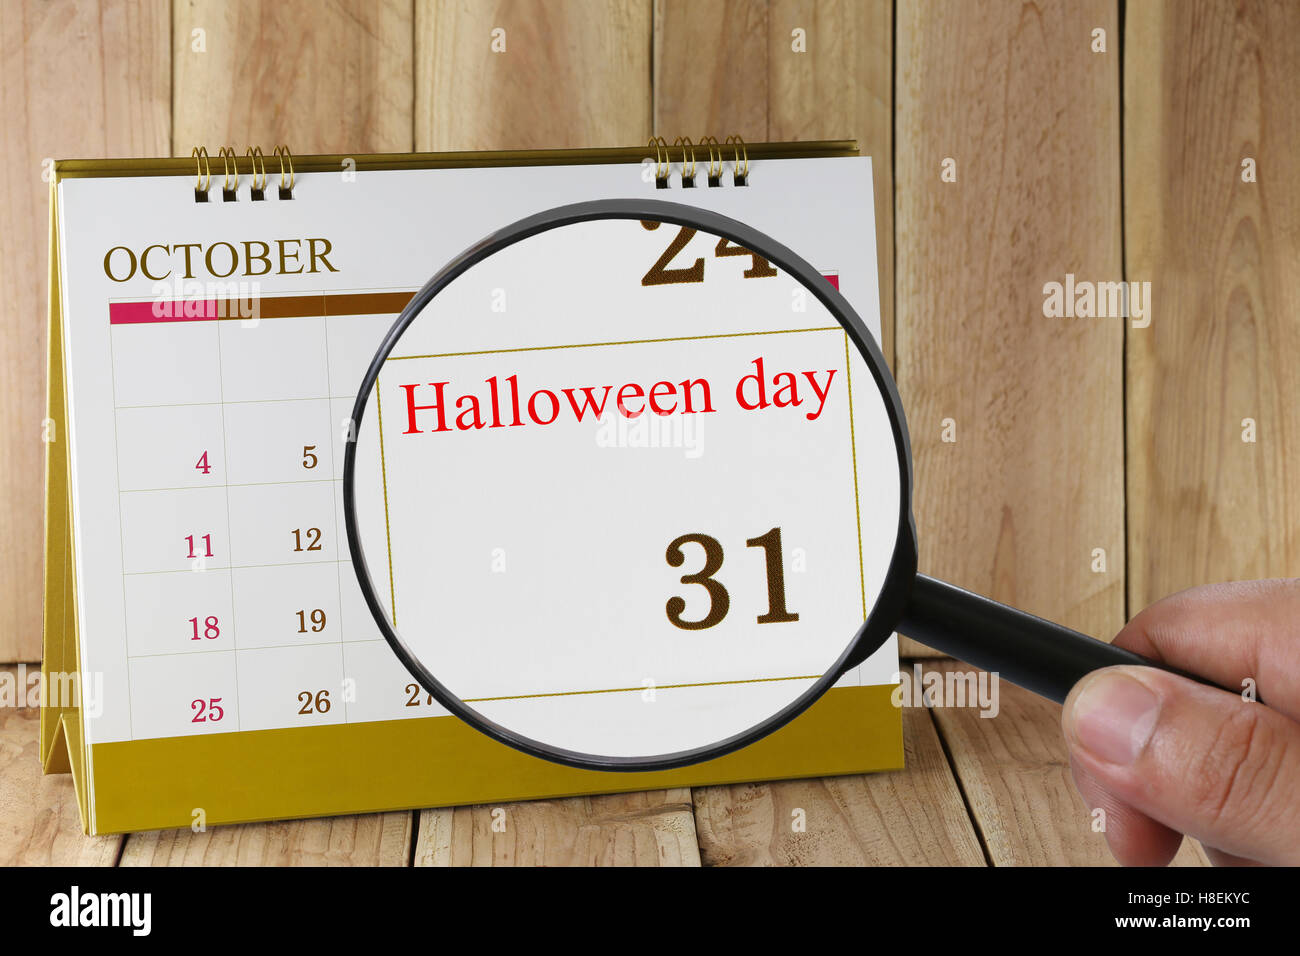 Lupe in der Hand im Kalender sehen Sie Halloween-Tag am 31. Oktober Konzept eines PR-Kampagne-Aktivitäten Stockfoto